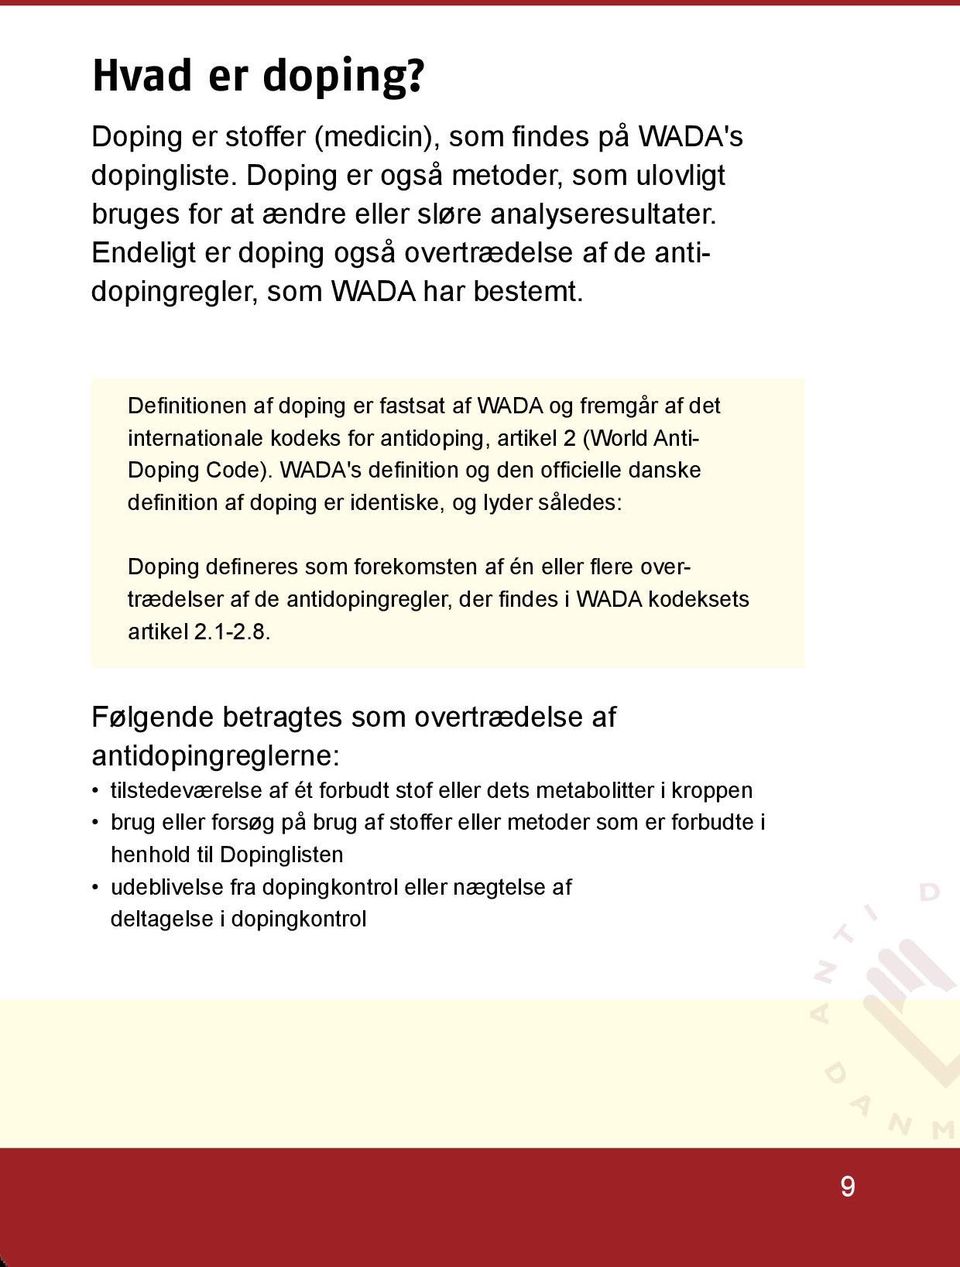 Definitionen af doping er fastsat af WADA og fremgår af det internationale kodeks for antidoping, artikel 2 (World Anti- Doping Code).